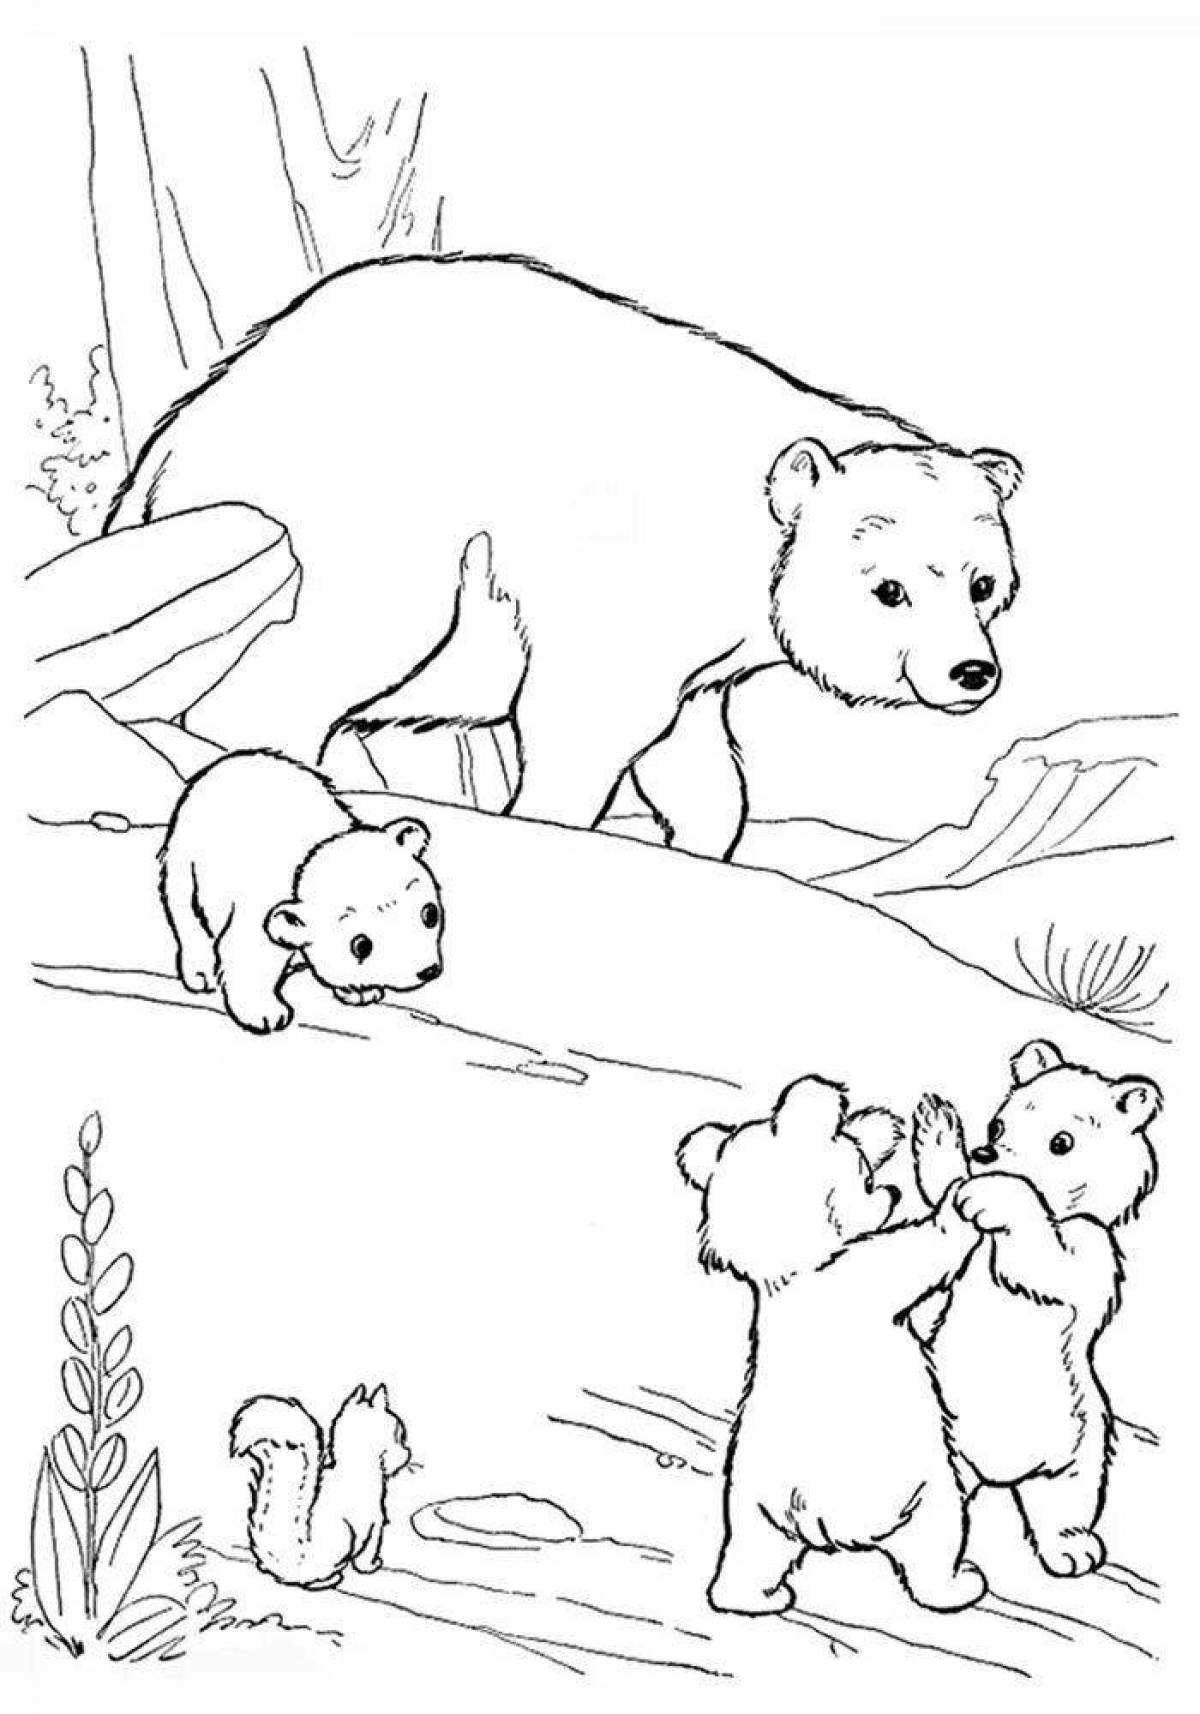 Cute teddy bear coloring book